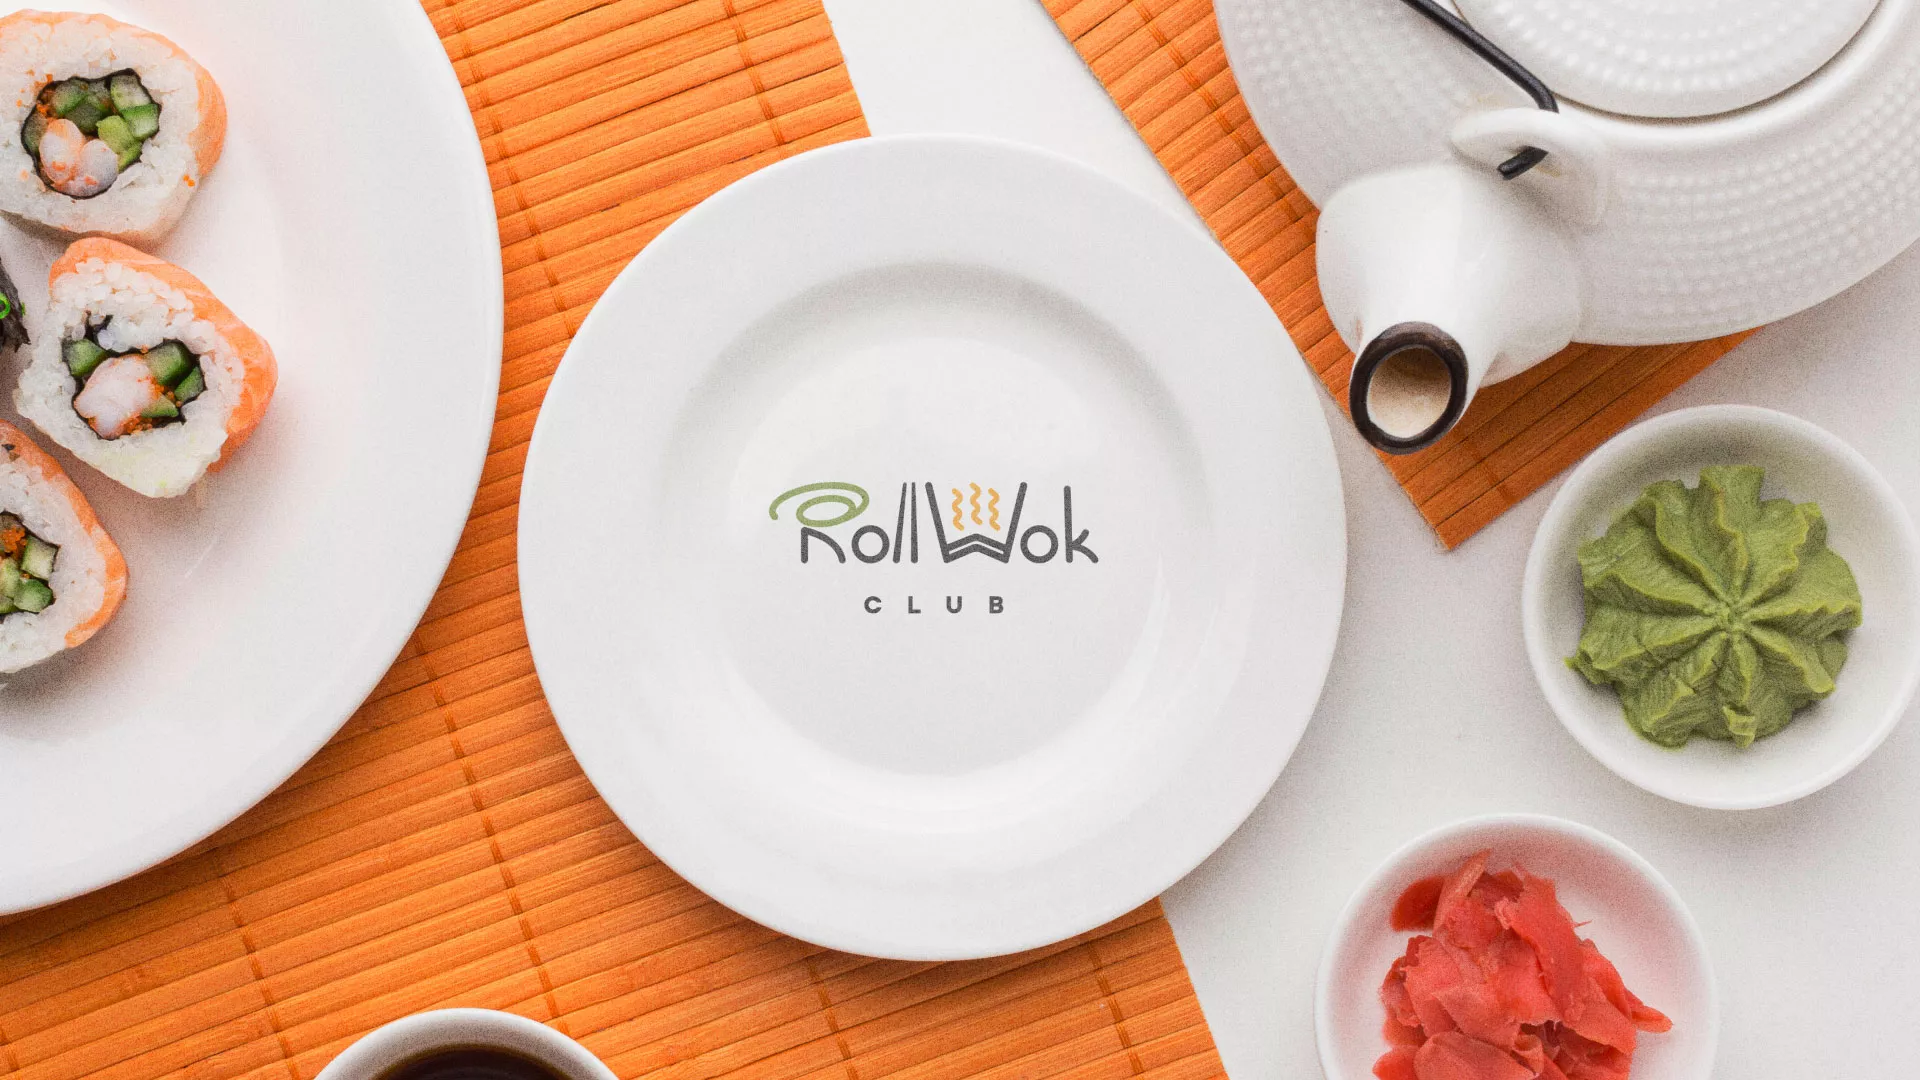 Разработка логотипа и фирменного стиля суши-бара «Roll Wok Club» в Новом Уренгое